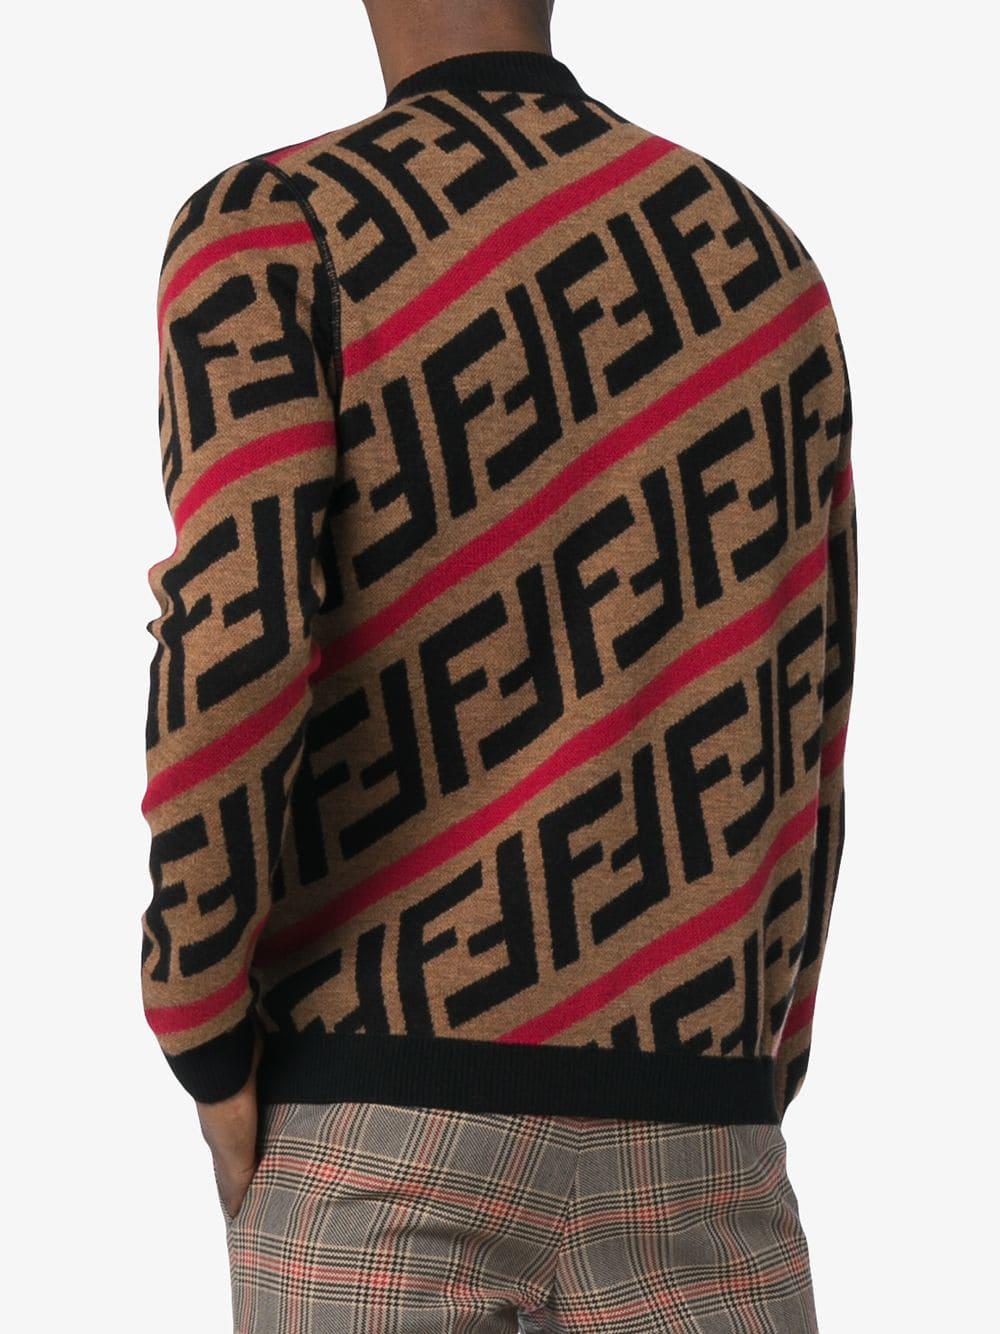 Fendi Wool Ff Logo Diagonal-stripe Sweater in Red for Men - Lyst